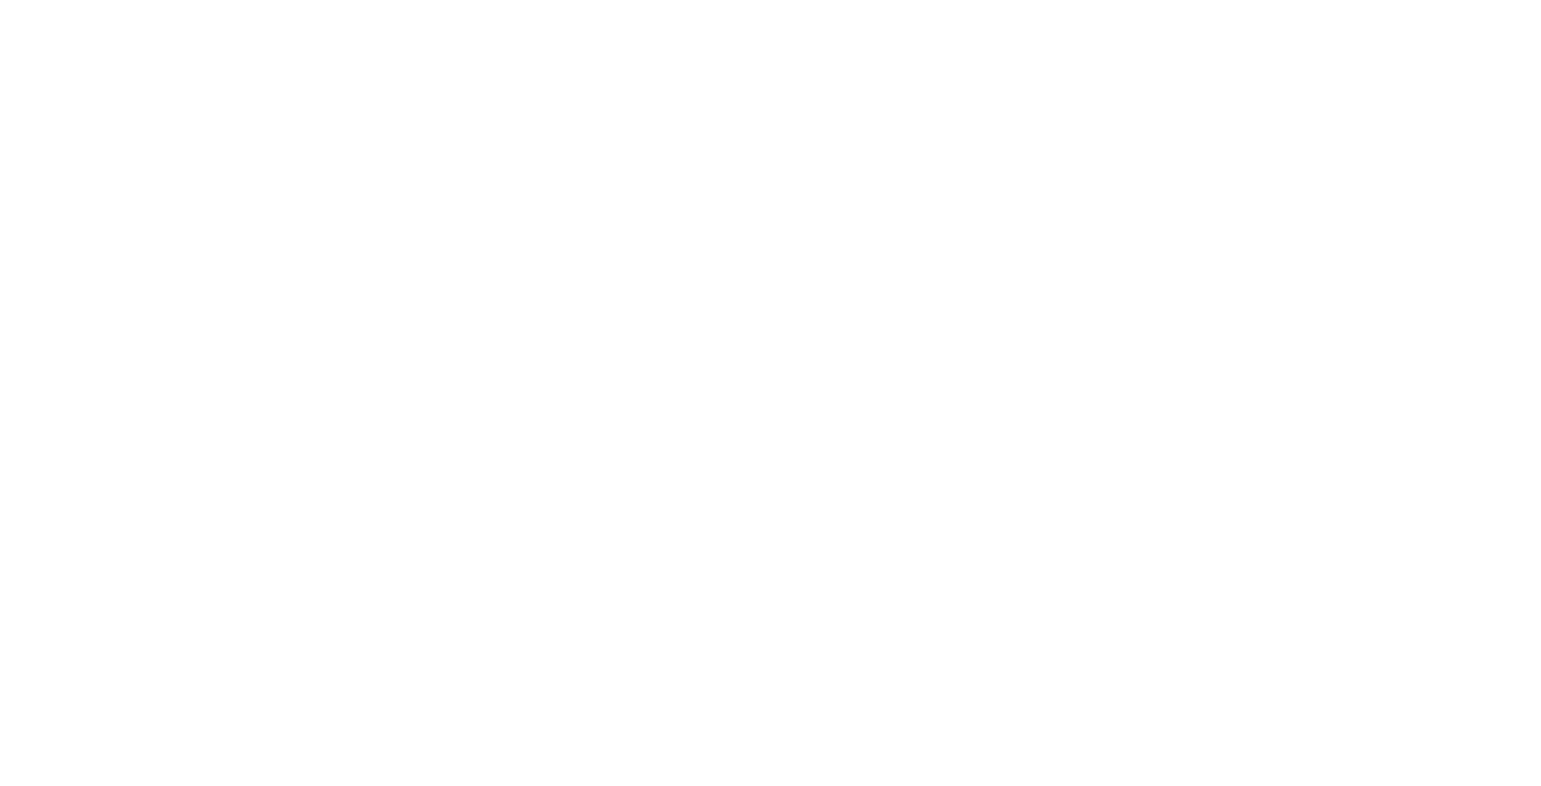 Industrivarden Logo für dunkle Hintergründe (transparentes PNG)